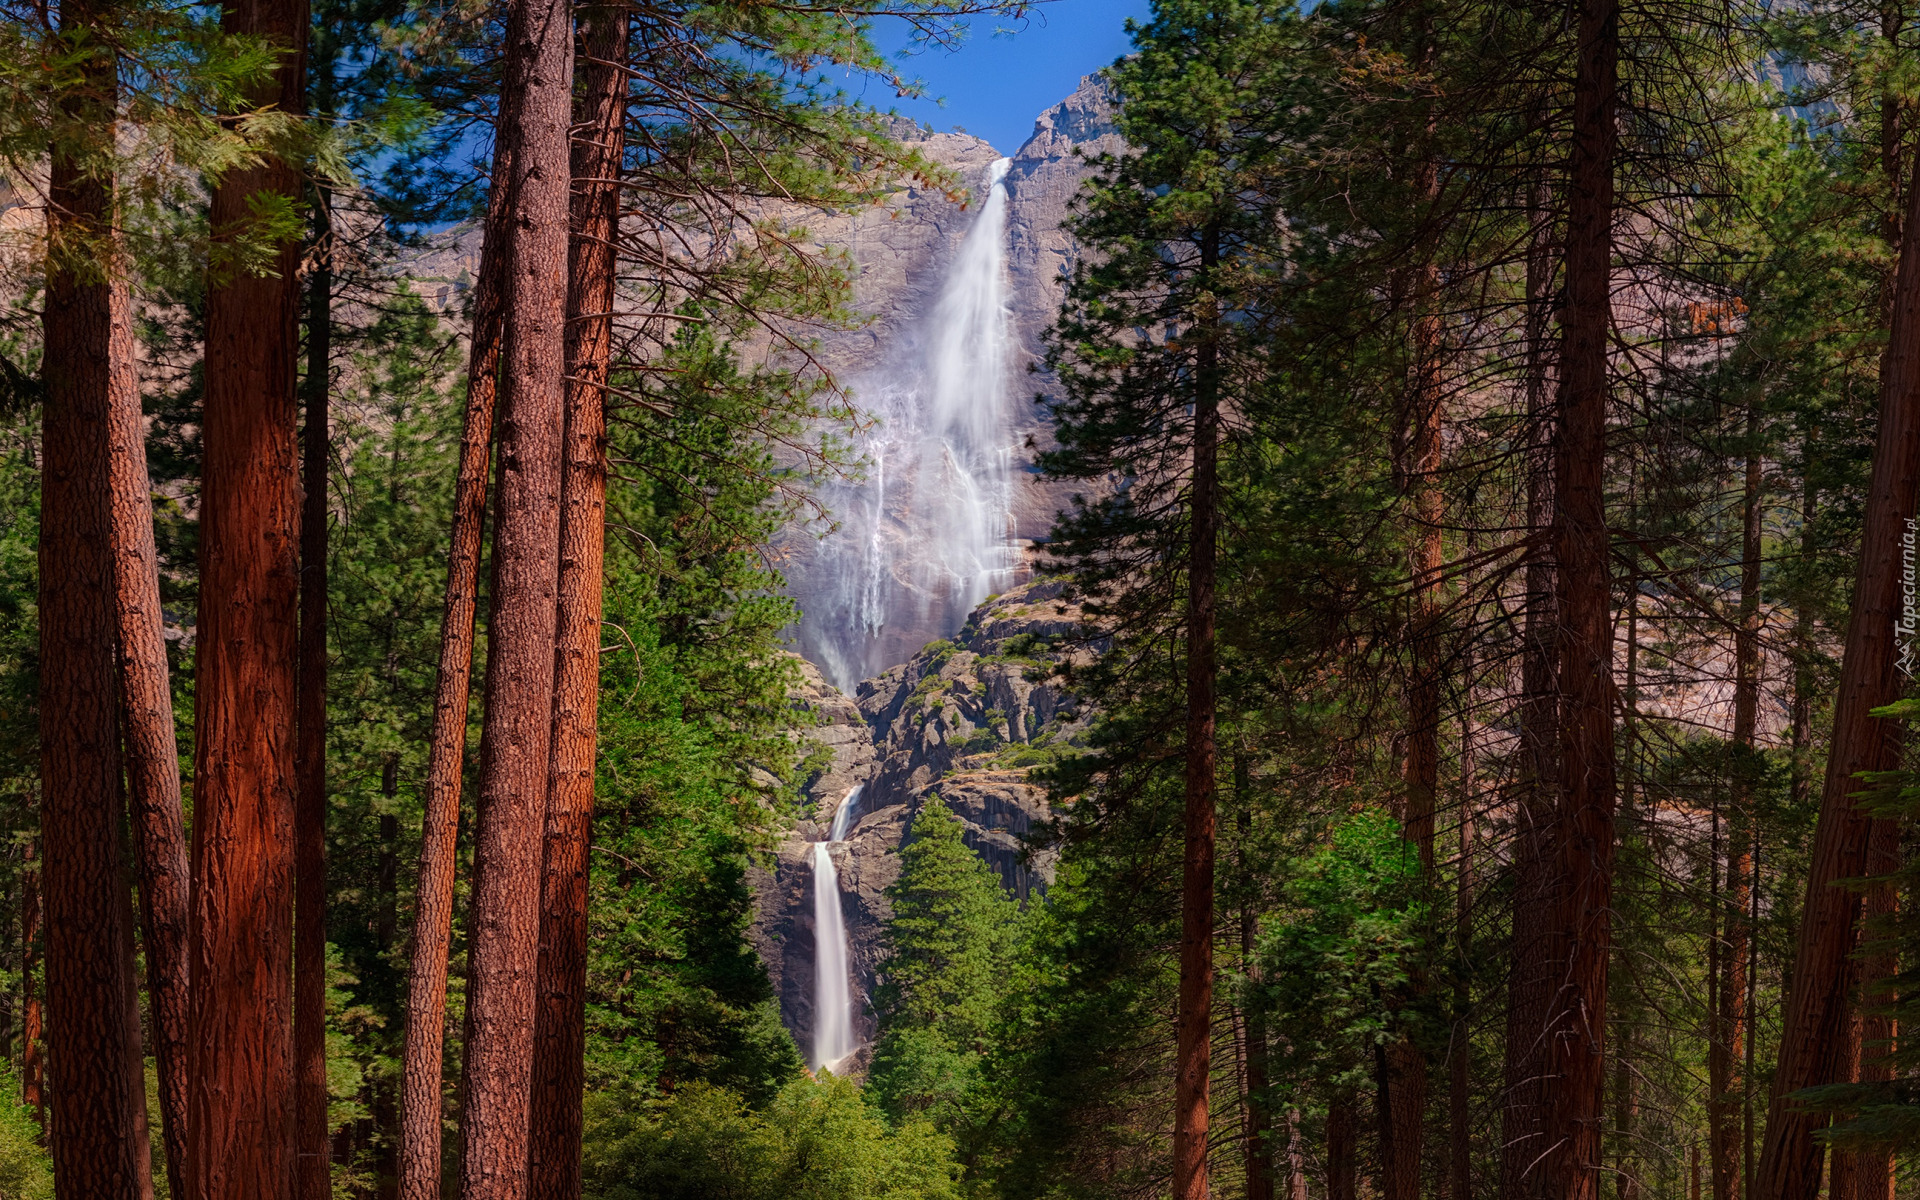 Park Narodowy Yosemite, Wodospad Upper Yosemite, Drzewa, Kalifornia, Stany Zjednoczone